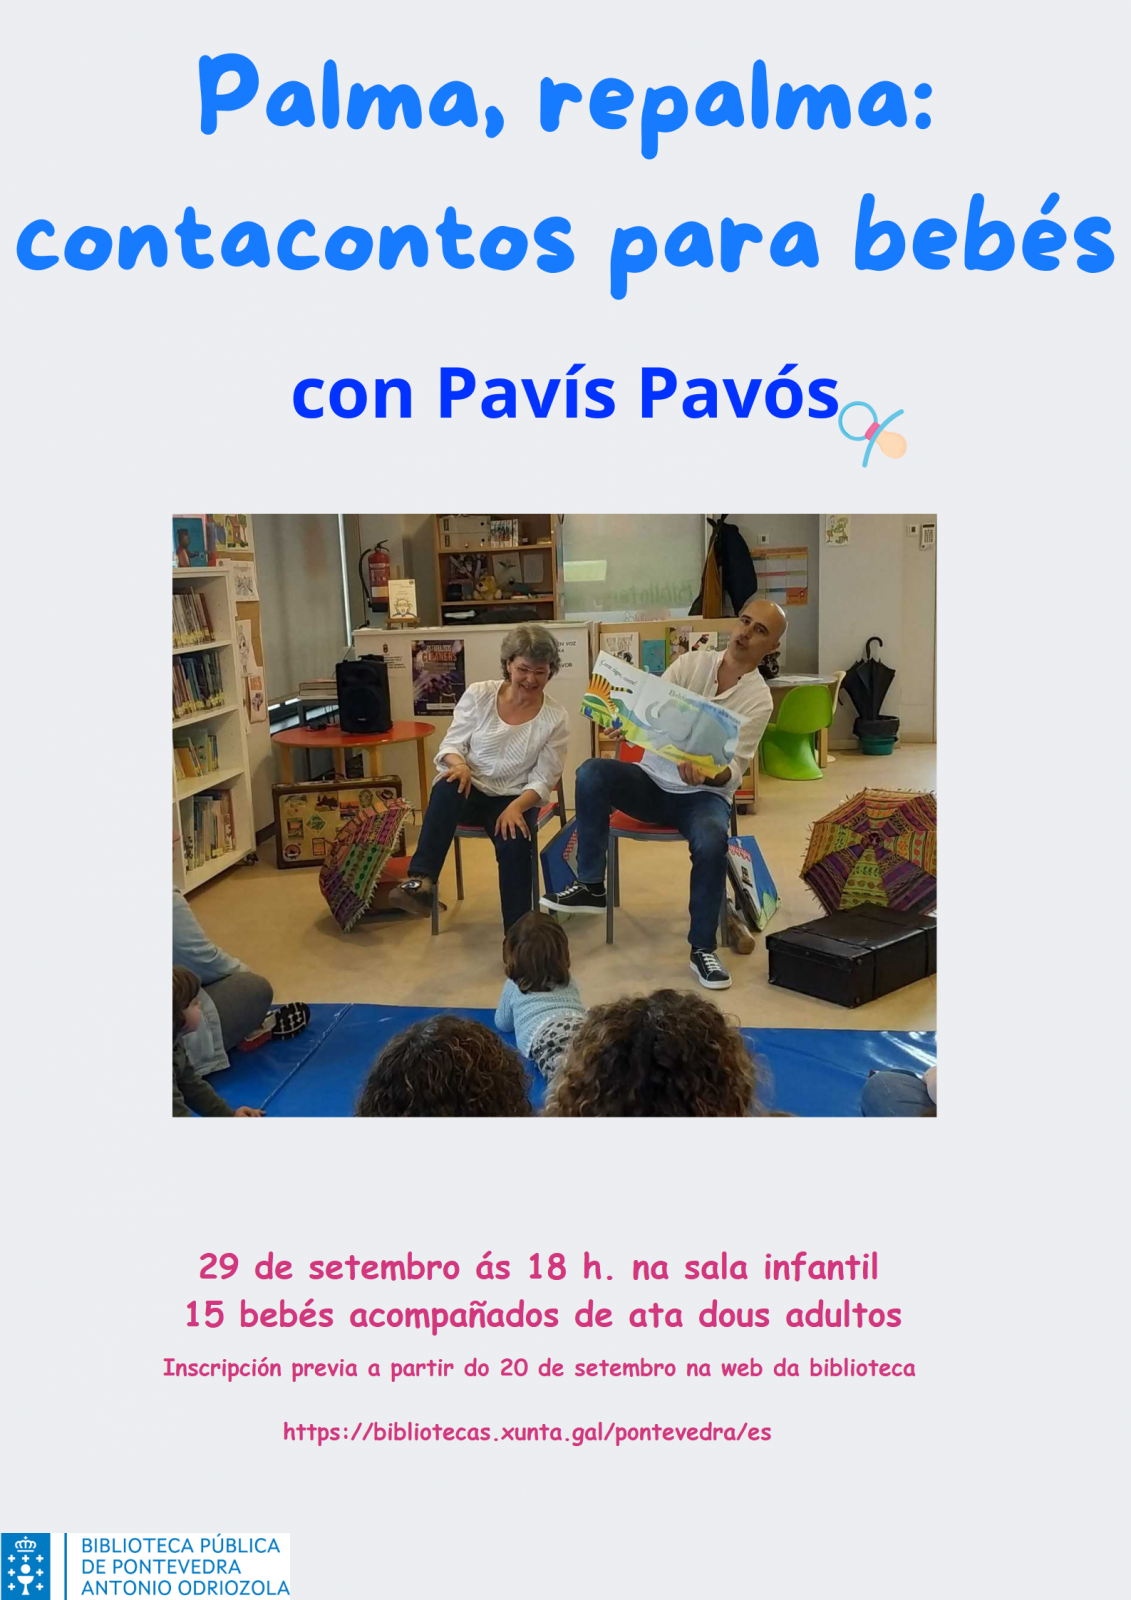 Palma, repalma: contacontos para bebés